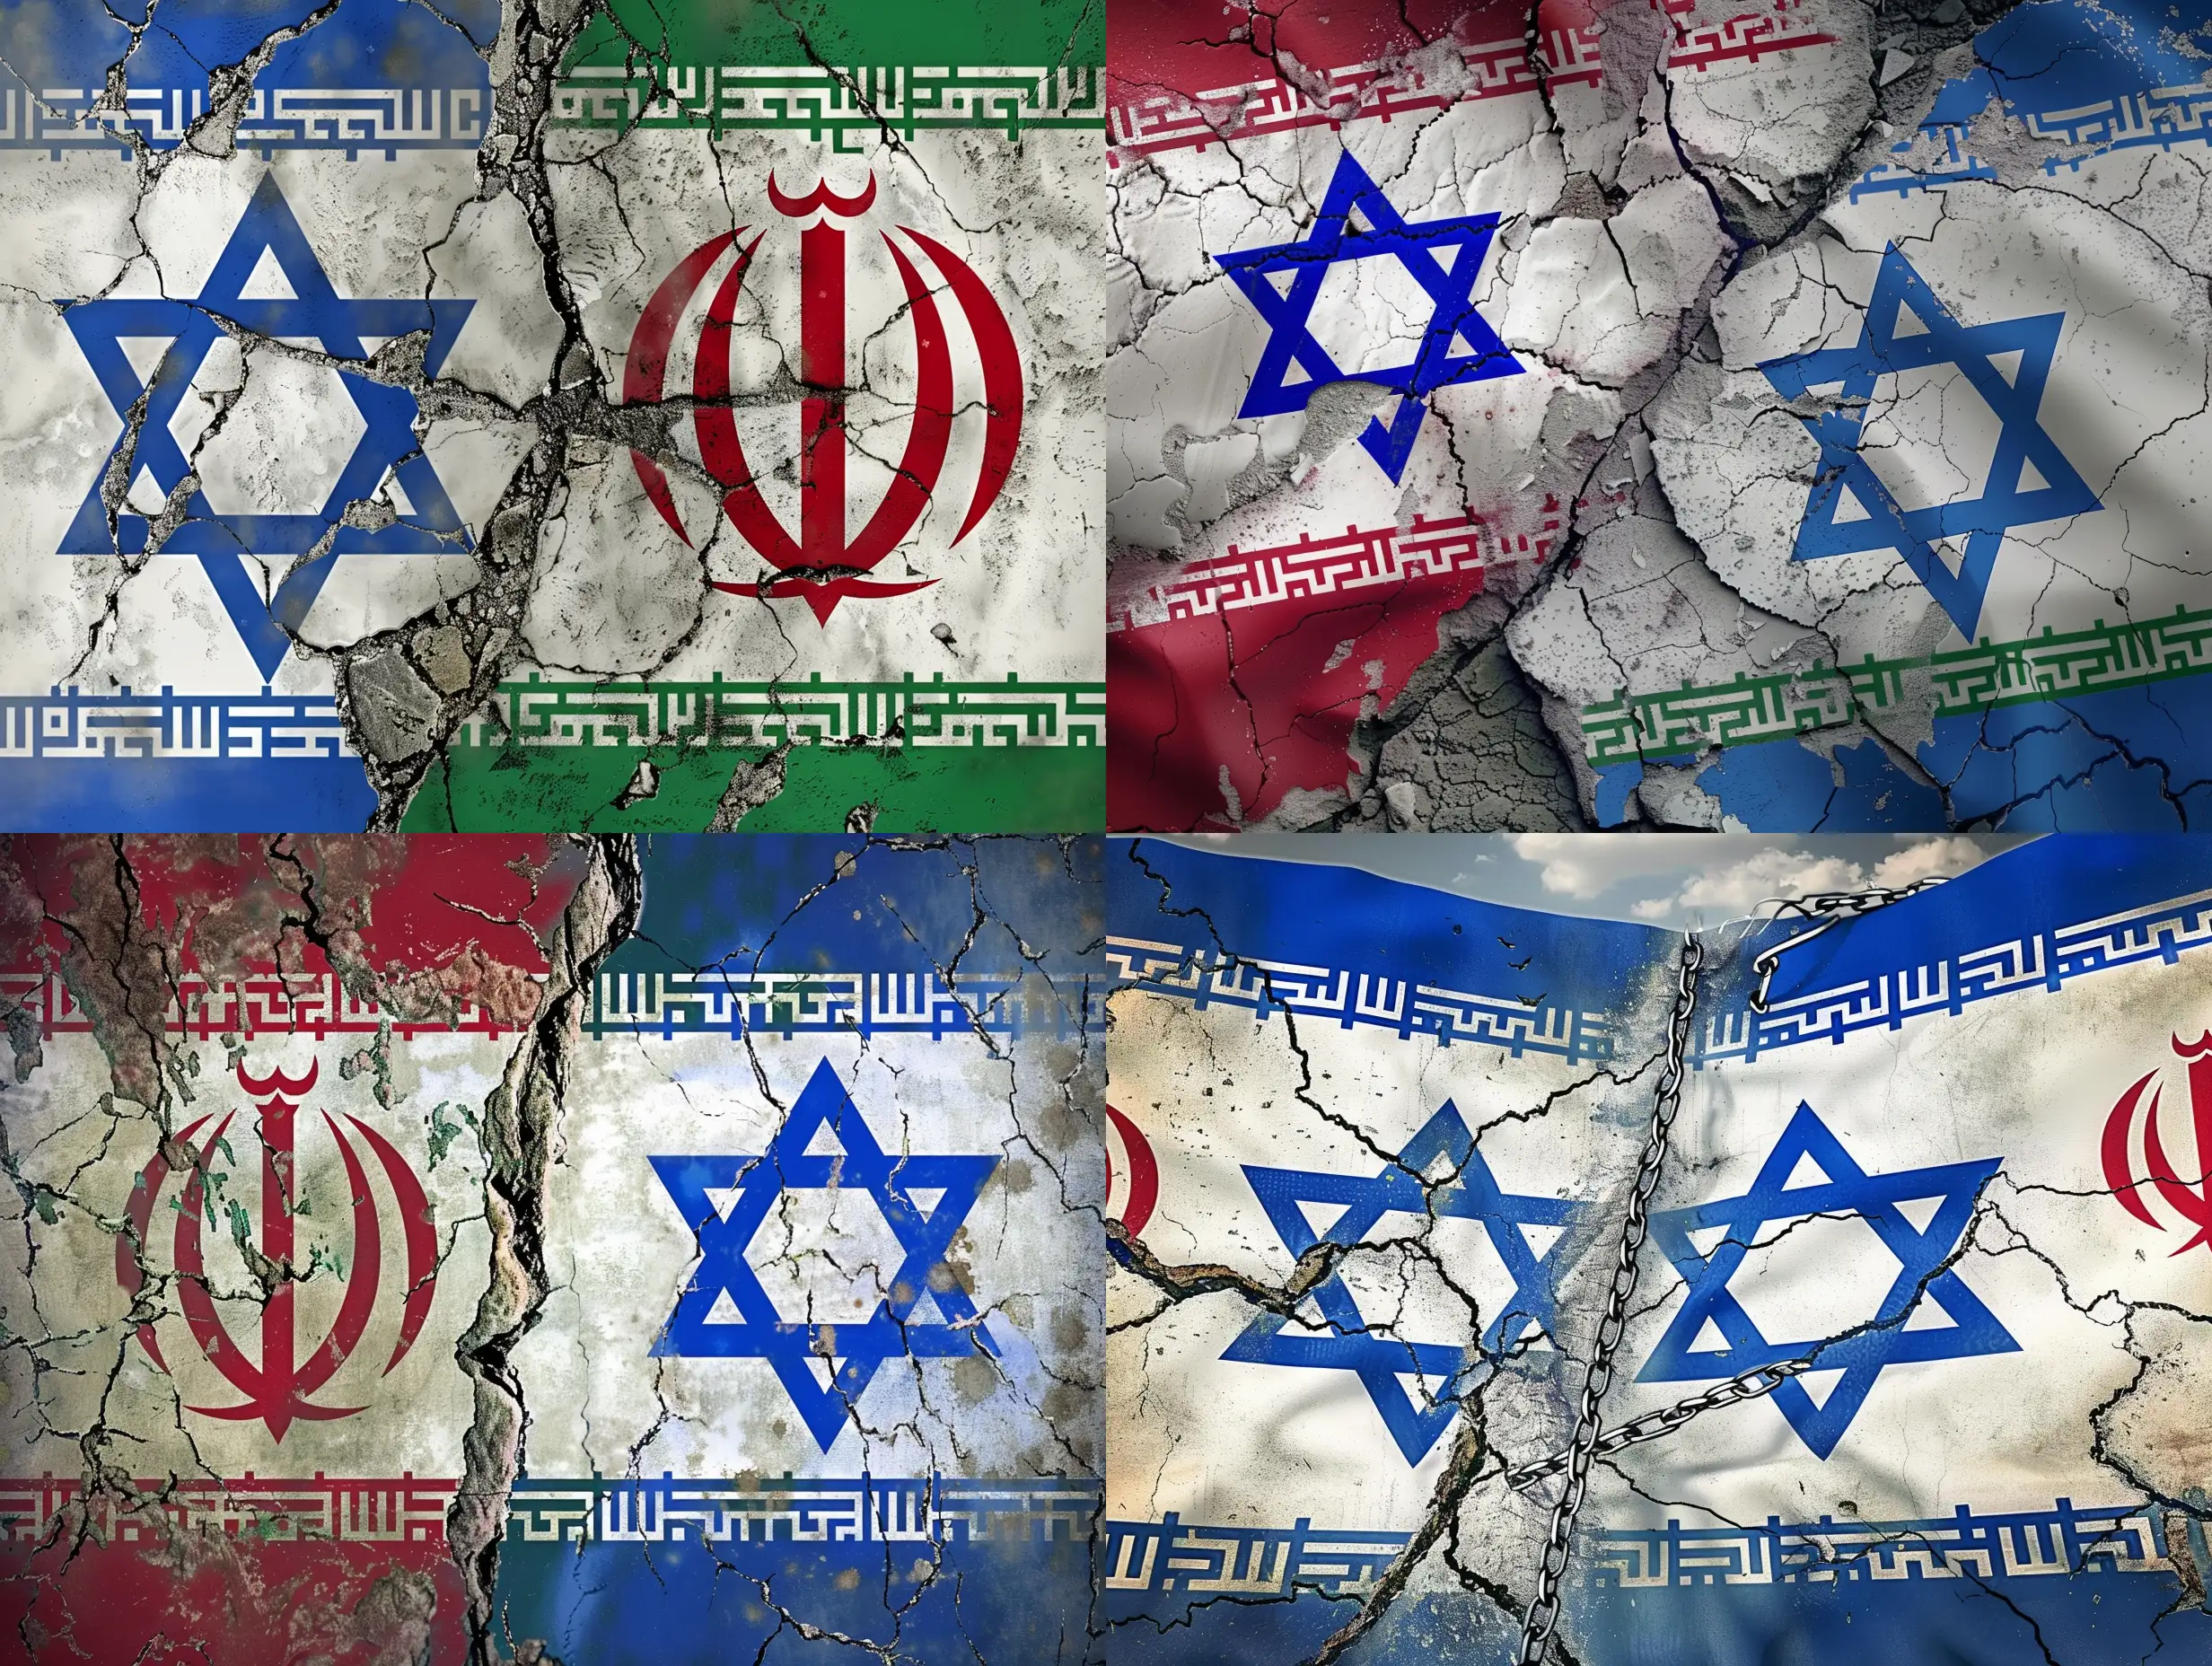 Vytvořte obrázek, který bude představovat nepřátelství mezi státy Izrael a Írán